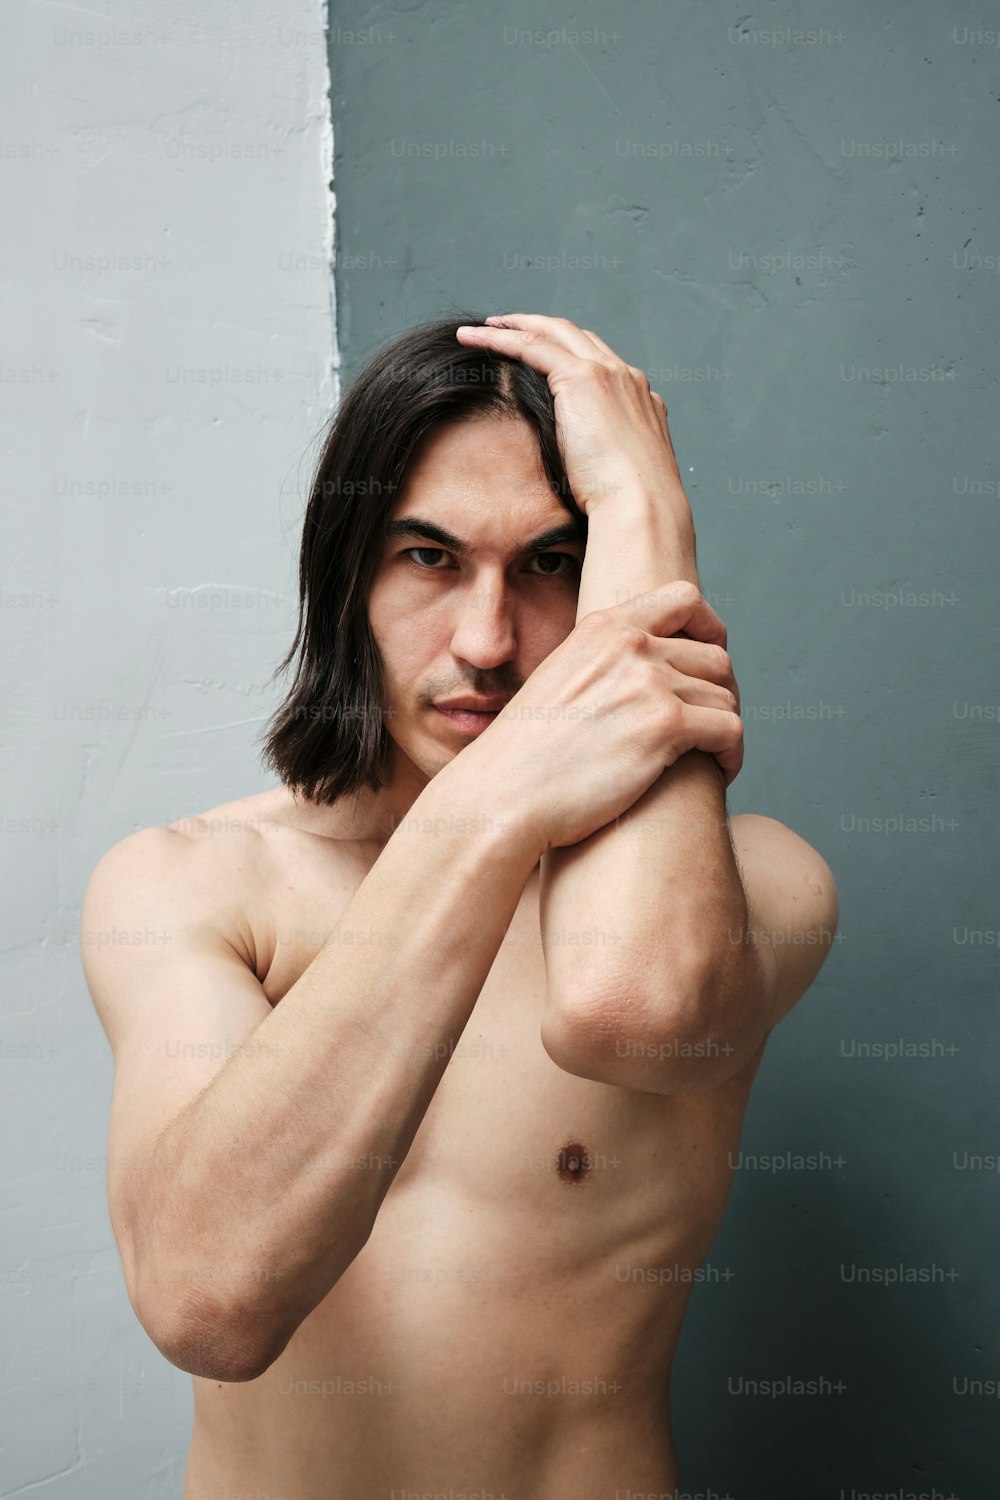 Un uomo con i capelli lunghi e senza camicia in posa per una foto